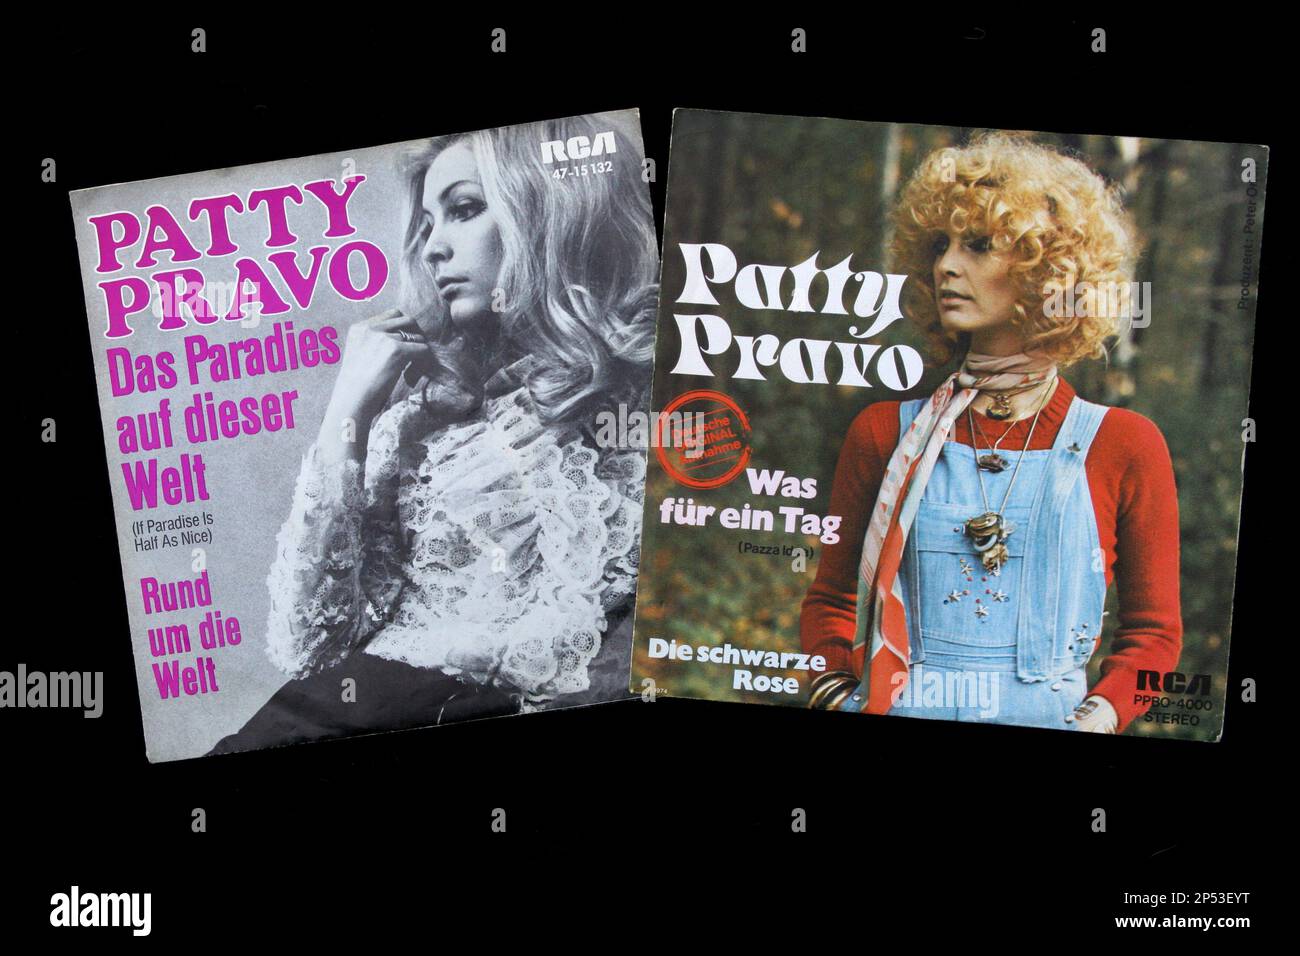 Zwei deutsche 45-U/min-vynil-Platten vom gefeierten italienischen Popsänger PATTY PRAVO aus den 60er und 70er Jahren - MUSICA POP - MUSIK - Cover - Copertine - 45 giri - Dischi - Vinile - Cantante - Camp - Schwulensymbol - LGBT - Collezione - Collezionismo ---- Archivio GBB Stockfoto